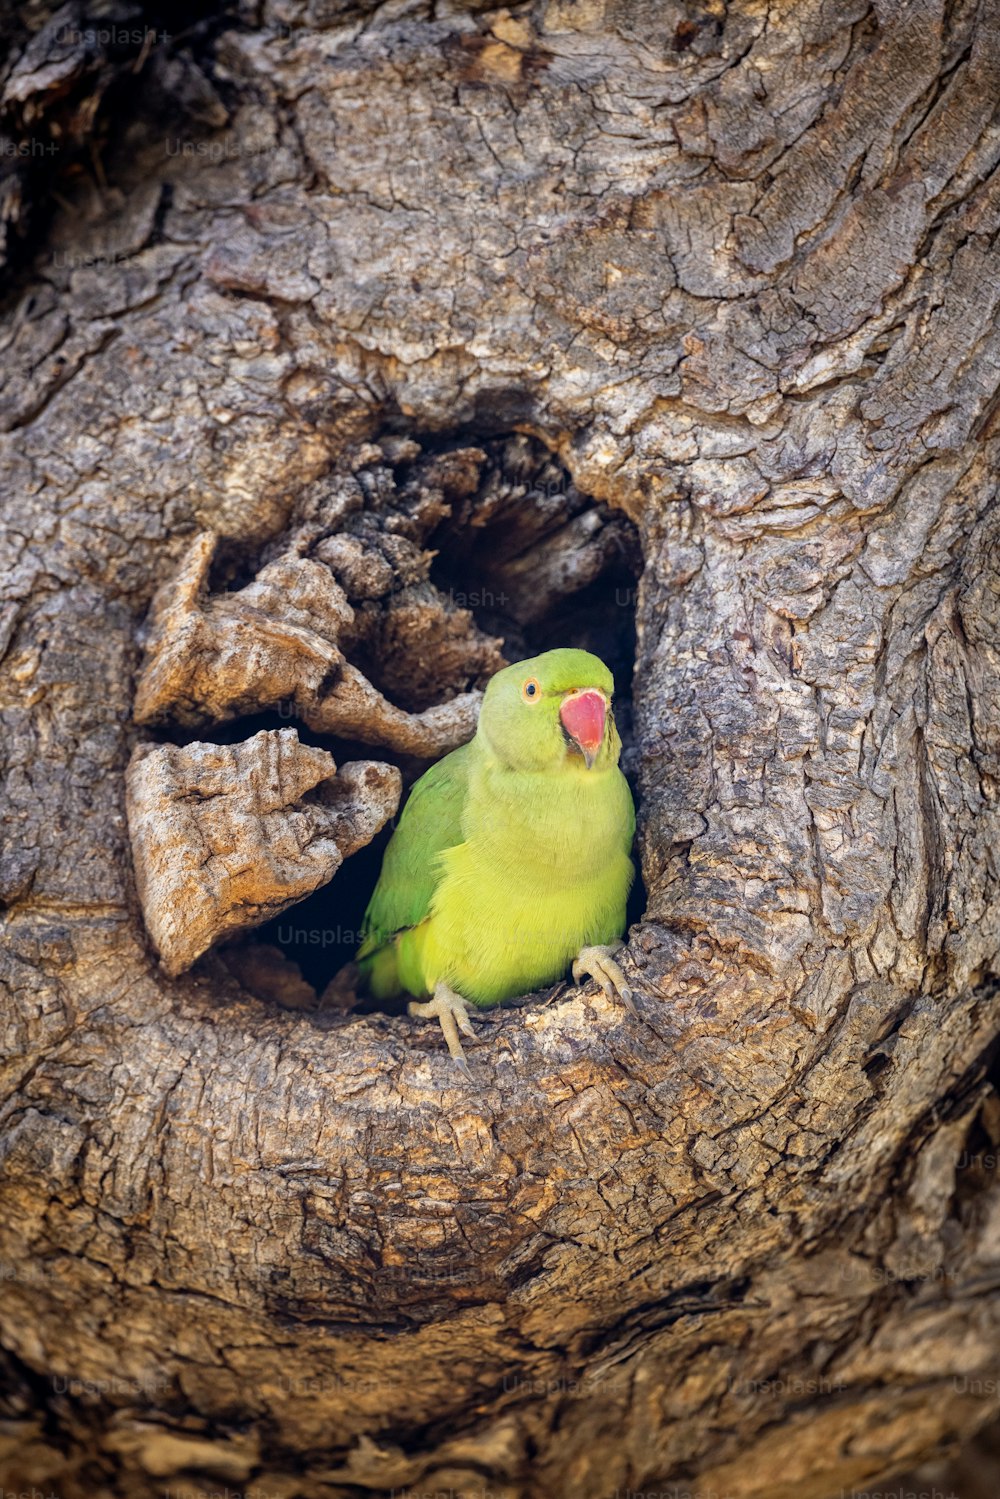 나무의 움푹 들어간 곳에 앉아 있는 녹색 새